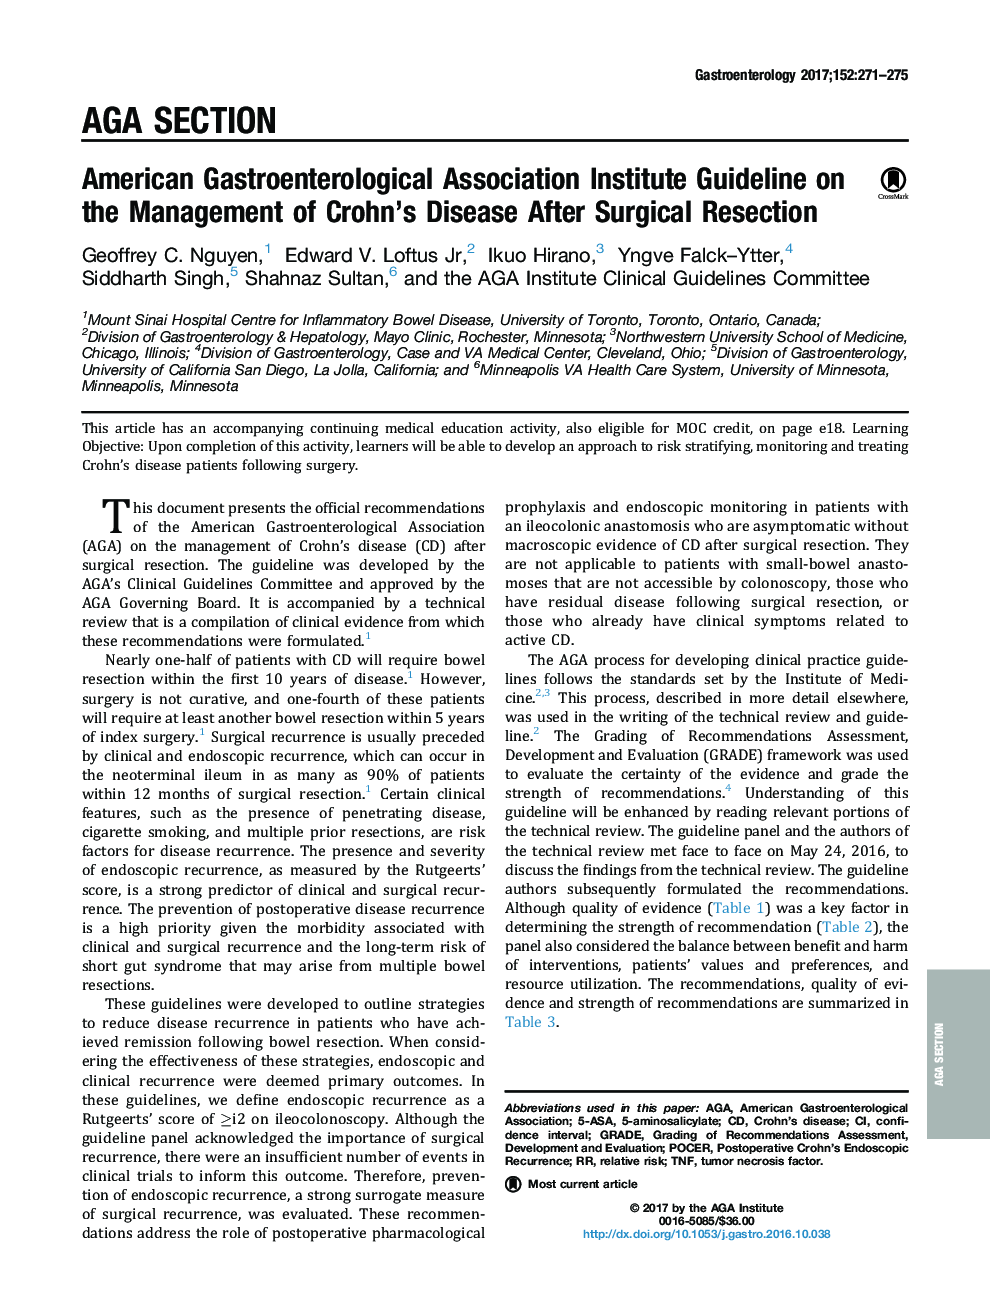 دستورالعمل موسسه انجمن گوارش آمریکا در مورد مدیریت بیماری کرون پس از عمل جراحی 